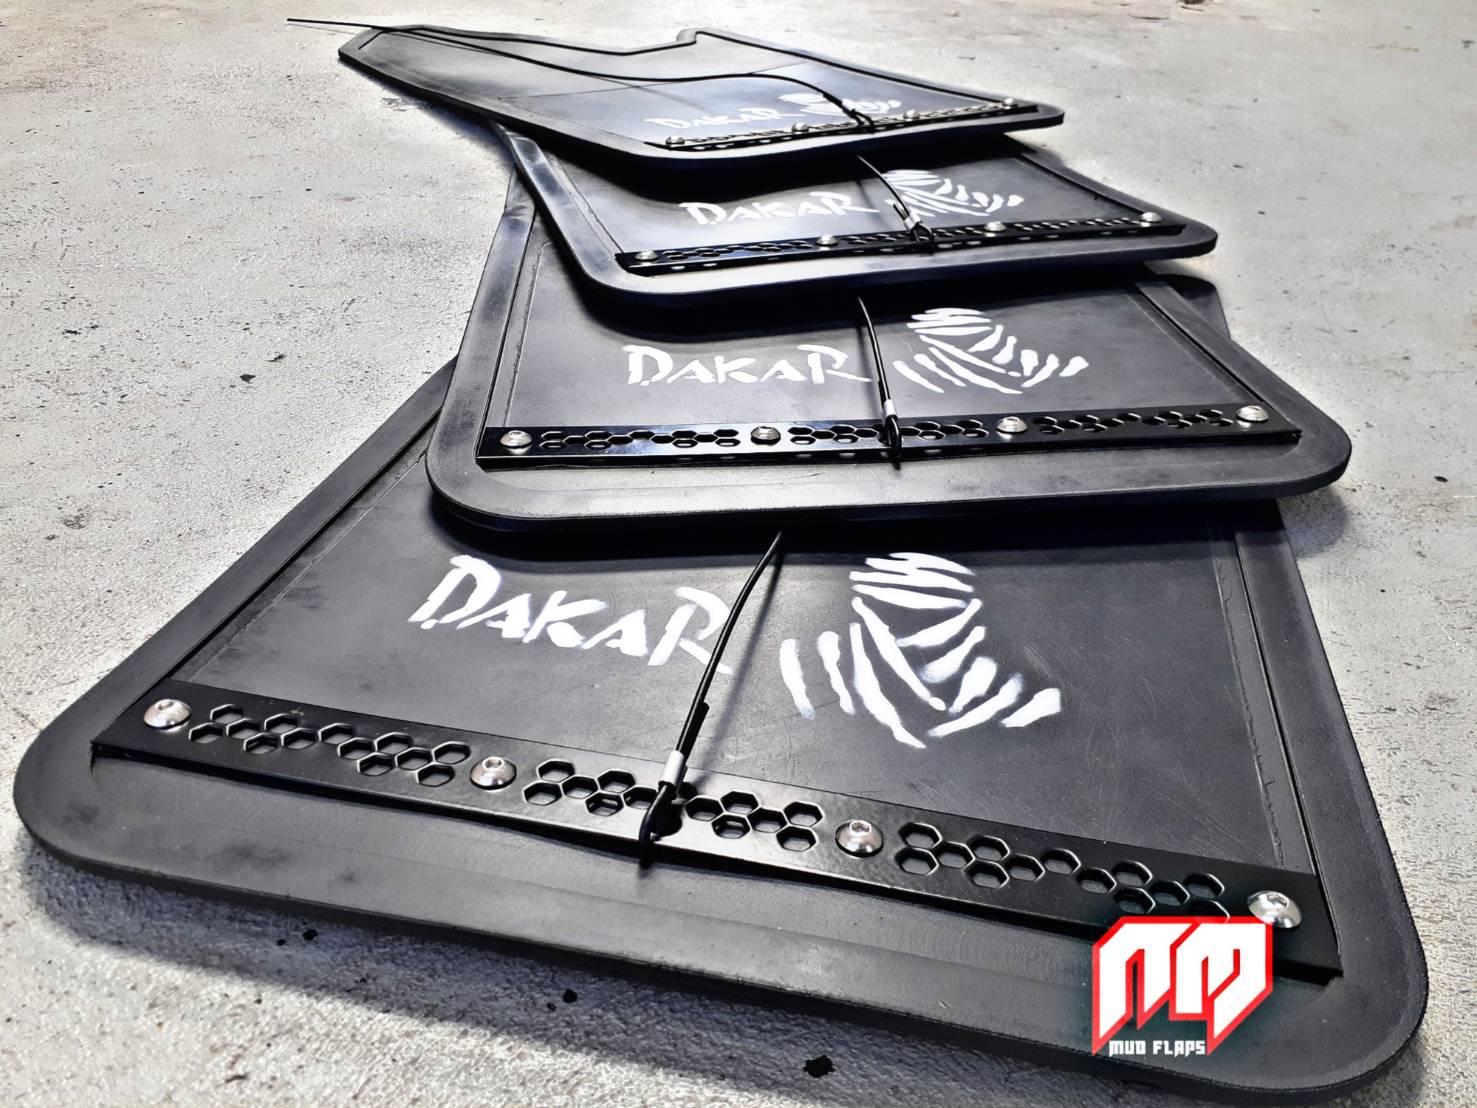 บังโคลนรถยนต์ Dakar Mud flaps Black Plate